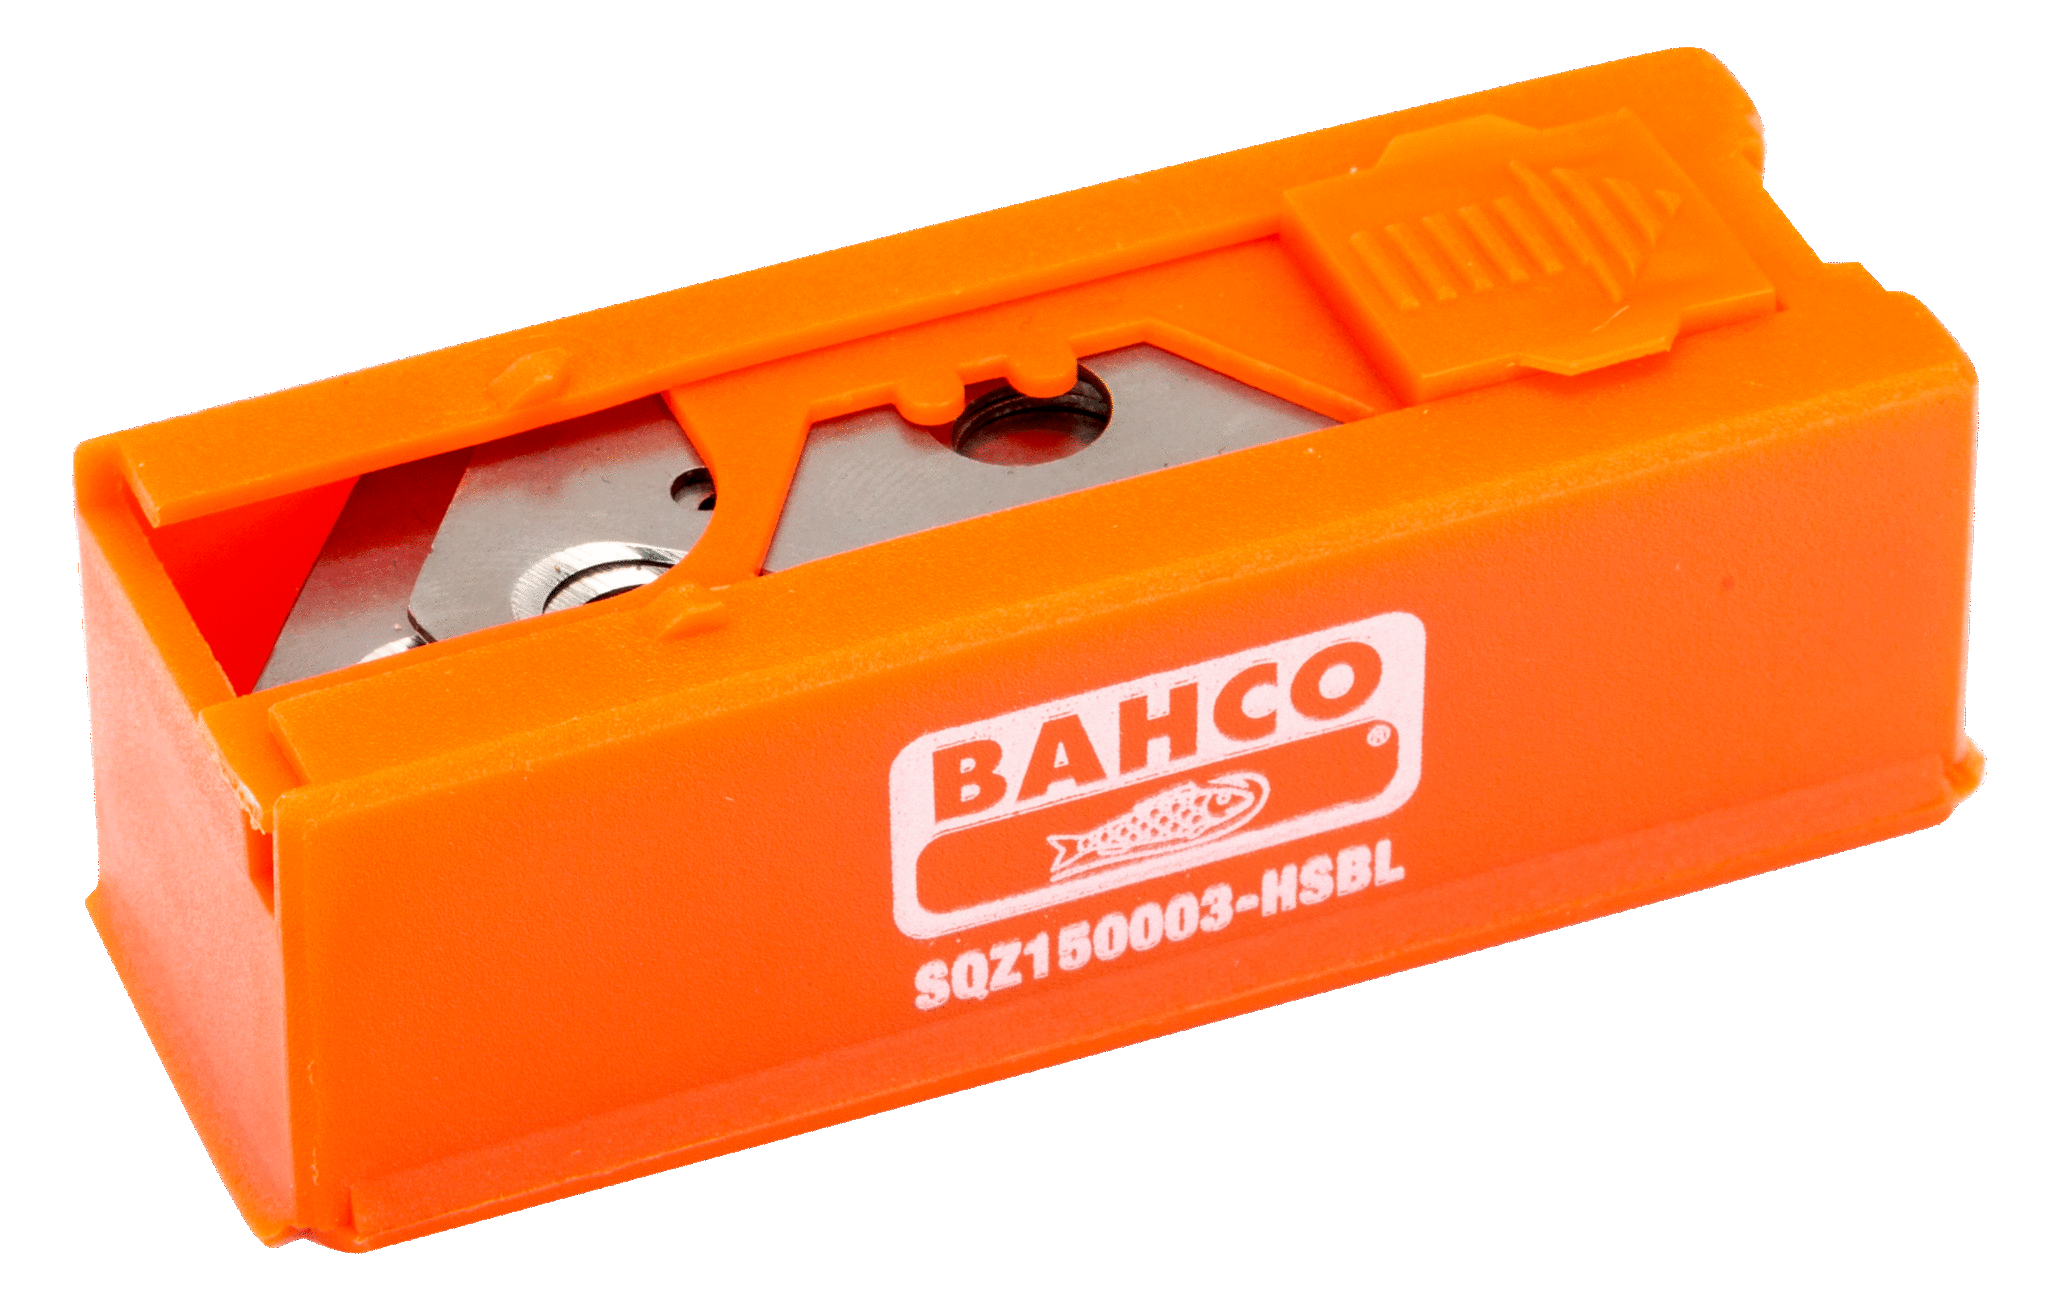 Сменные крючкообразные лезвия в кассетной упаковке BAHCO SQZ150003-HSBL